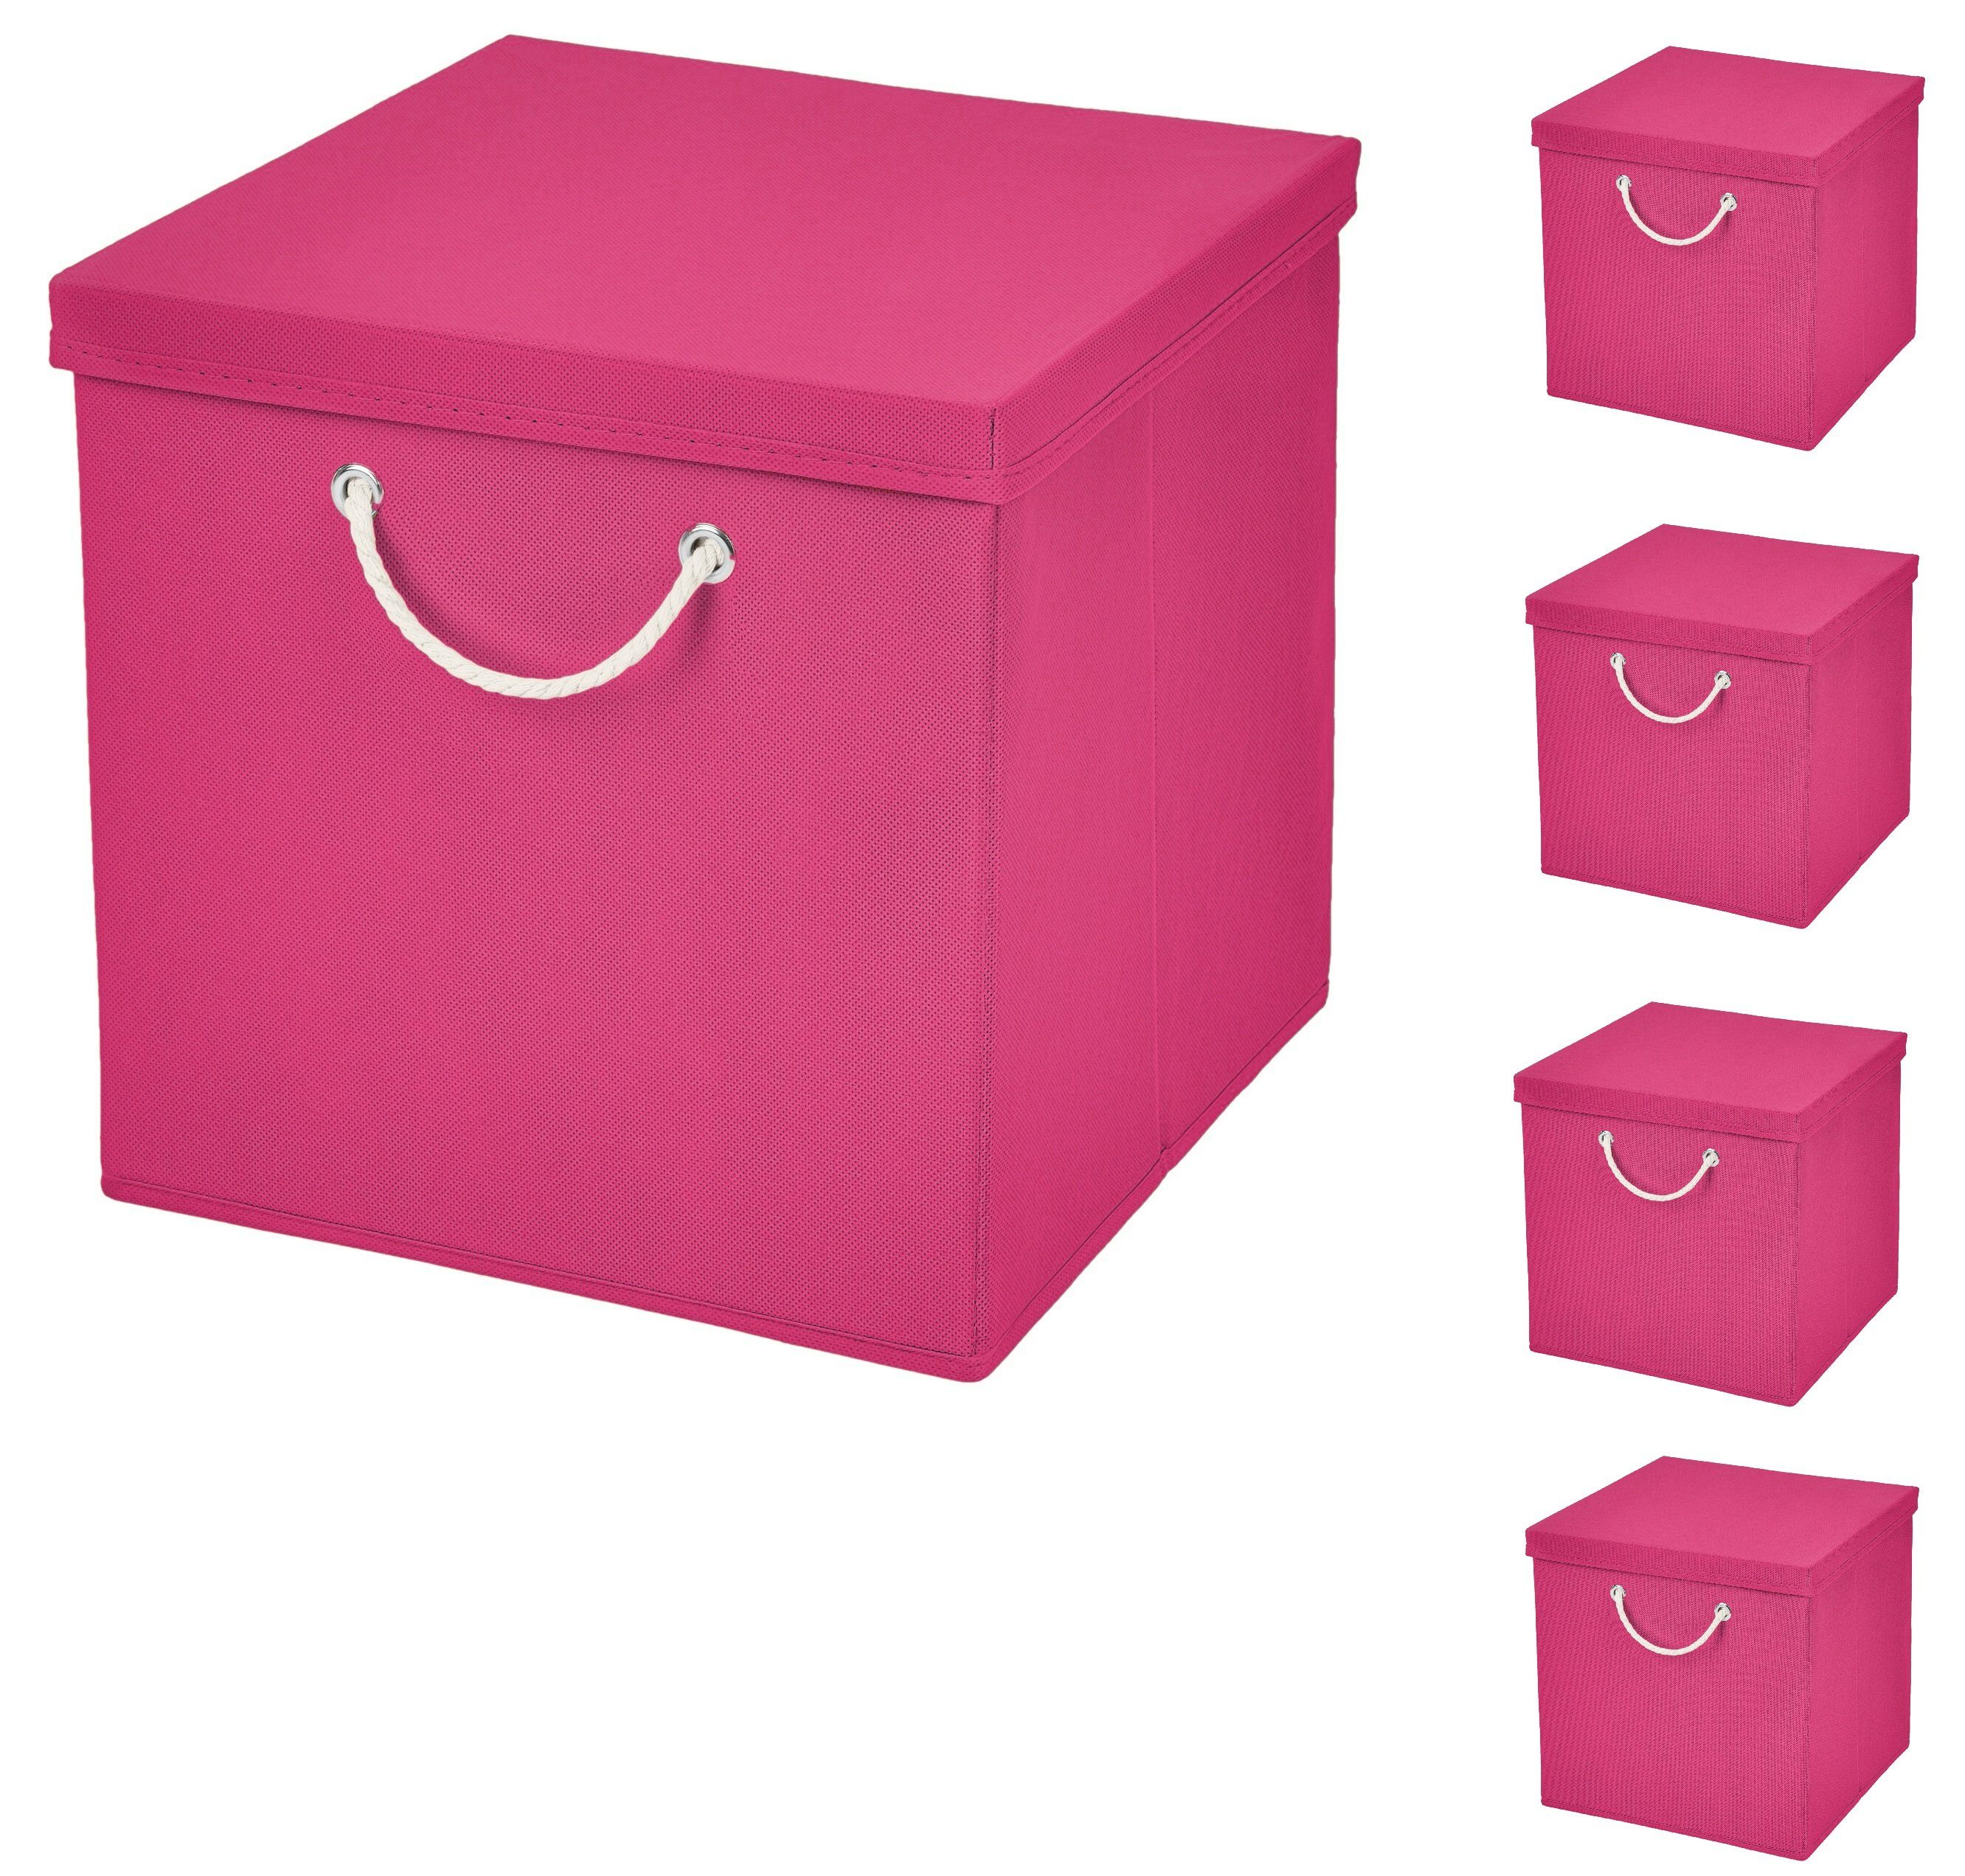 StickandShine Faltbox 5x Faltkiste 30x30x30 cm Aufbewahrungsbox Regalbox in verschiedenen Farben (5 Stück 30x30x30) moderne Faltbox Maritim mit Kordel 30cm